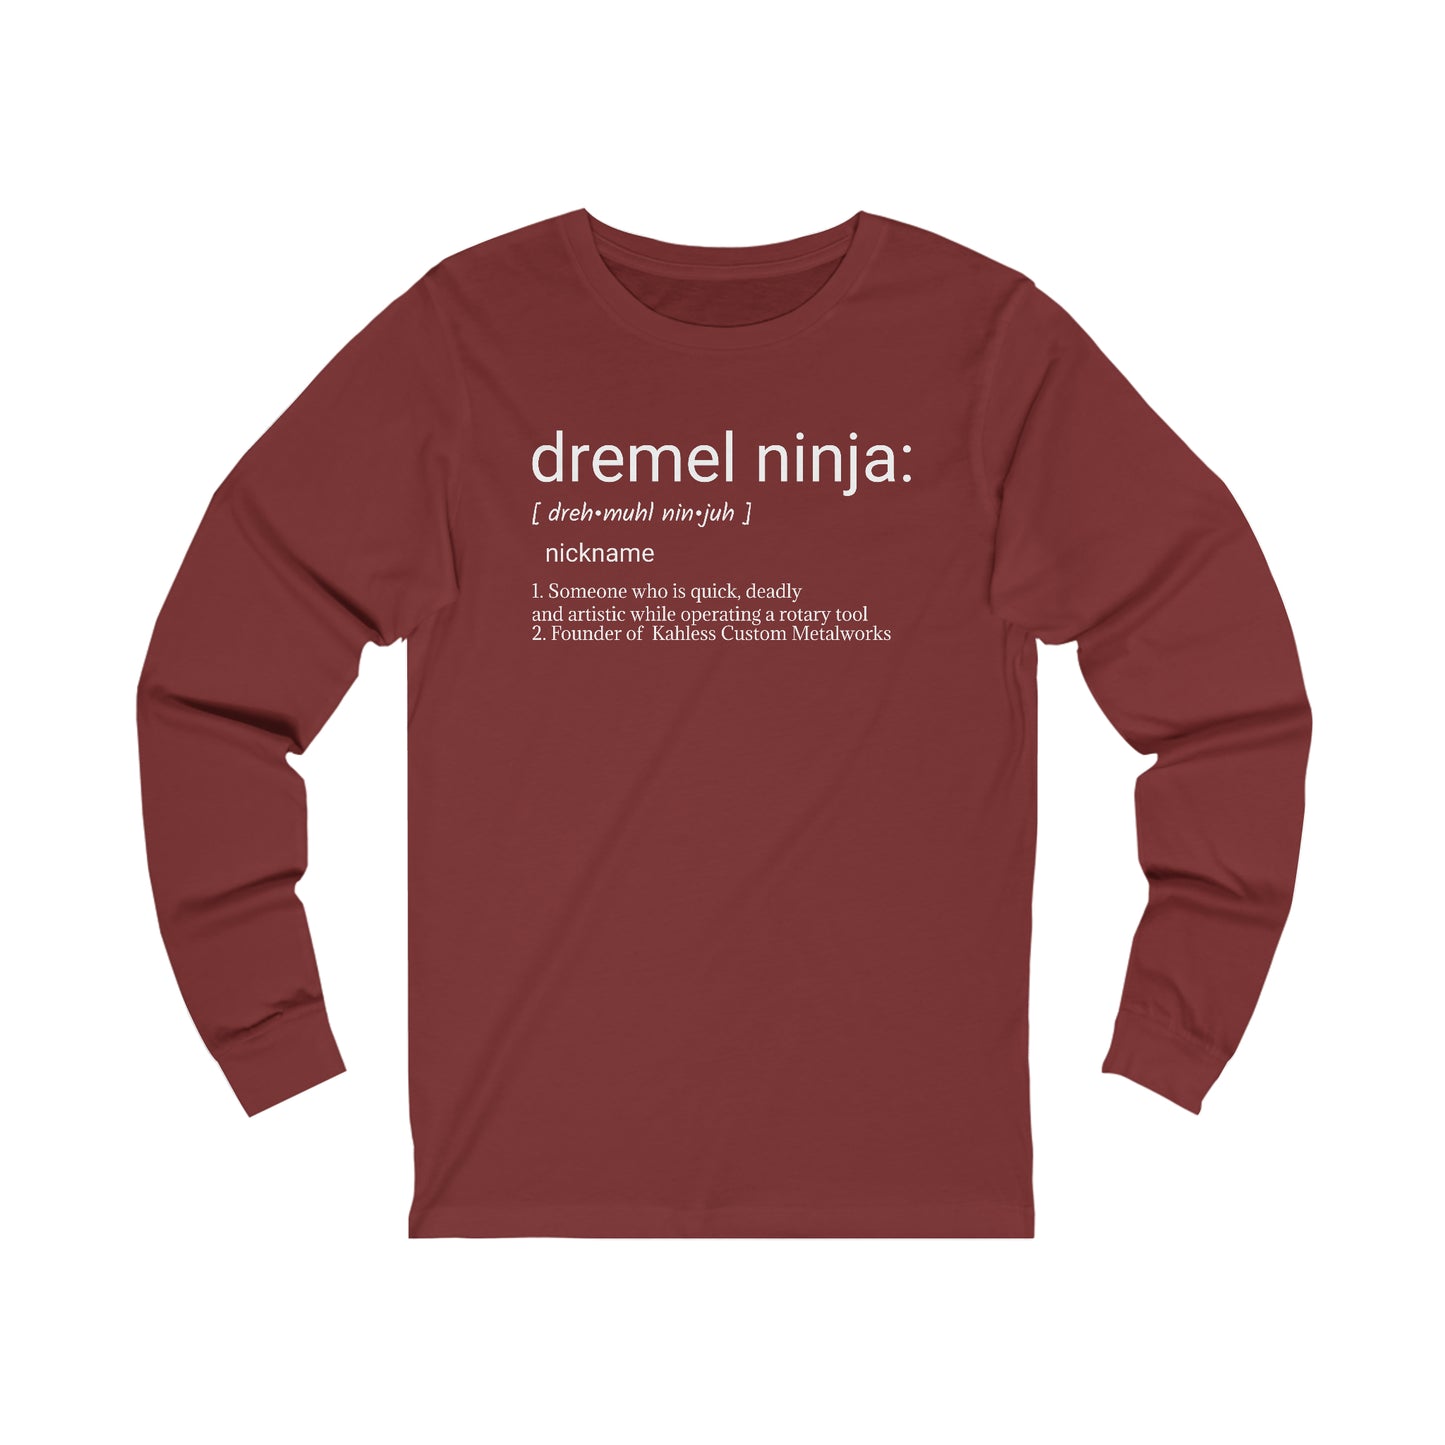 Dremel Ninja Dictionary